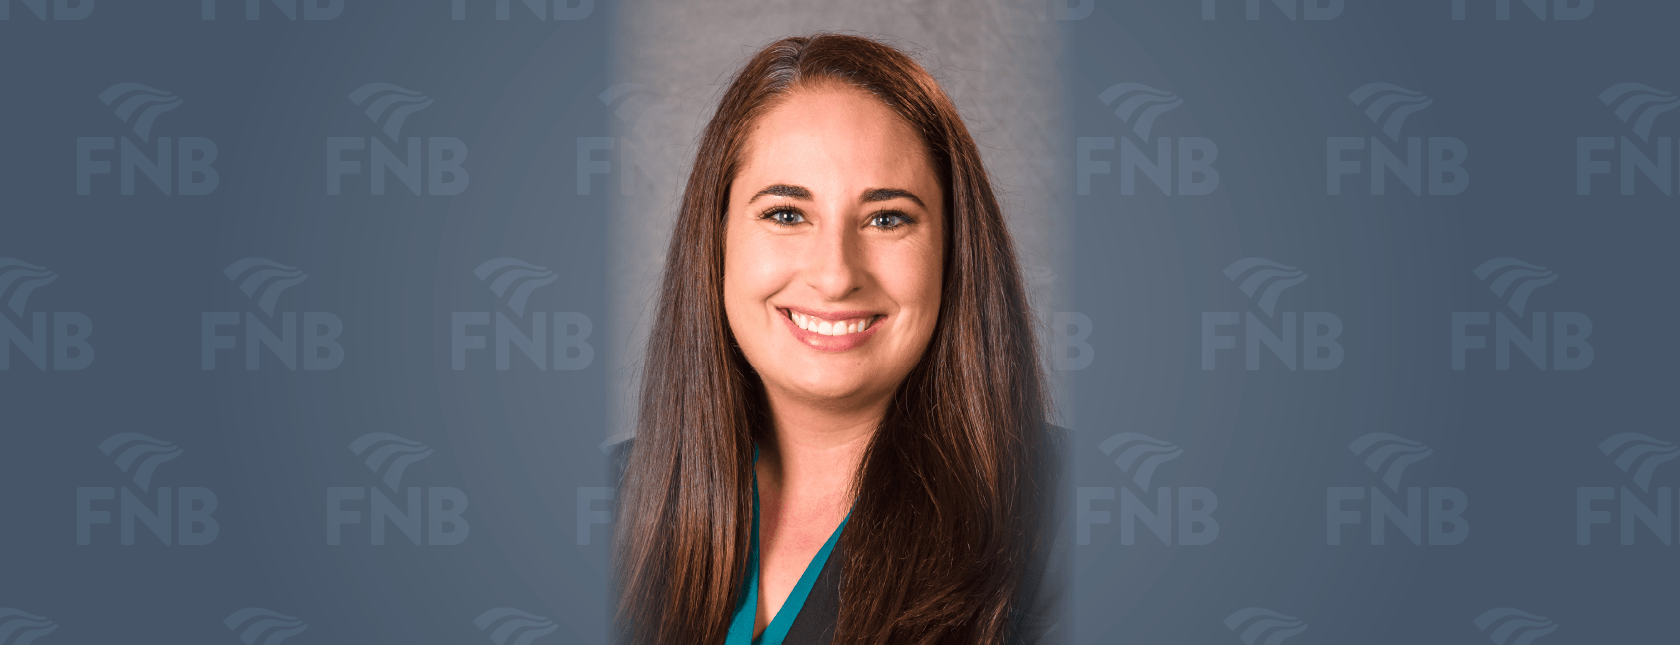 Alana Baker Dunn Elected as New Board Member for FNB